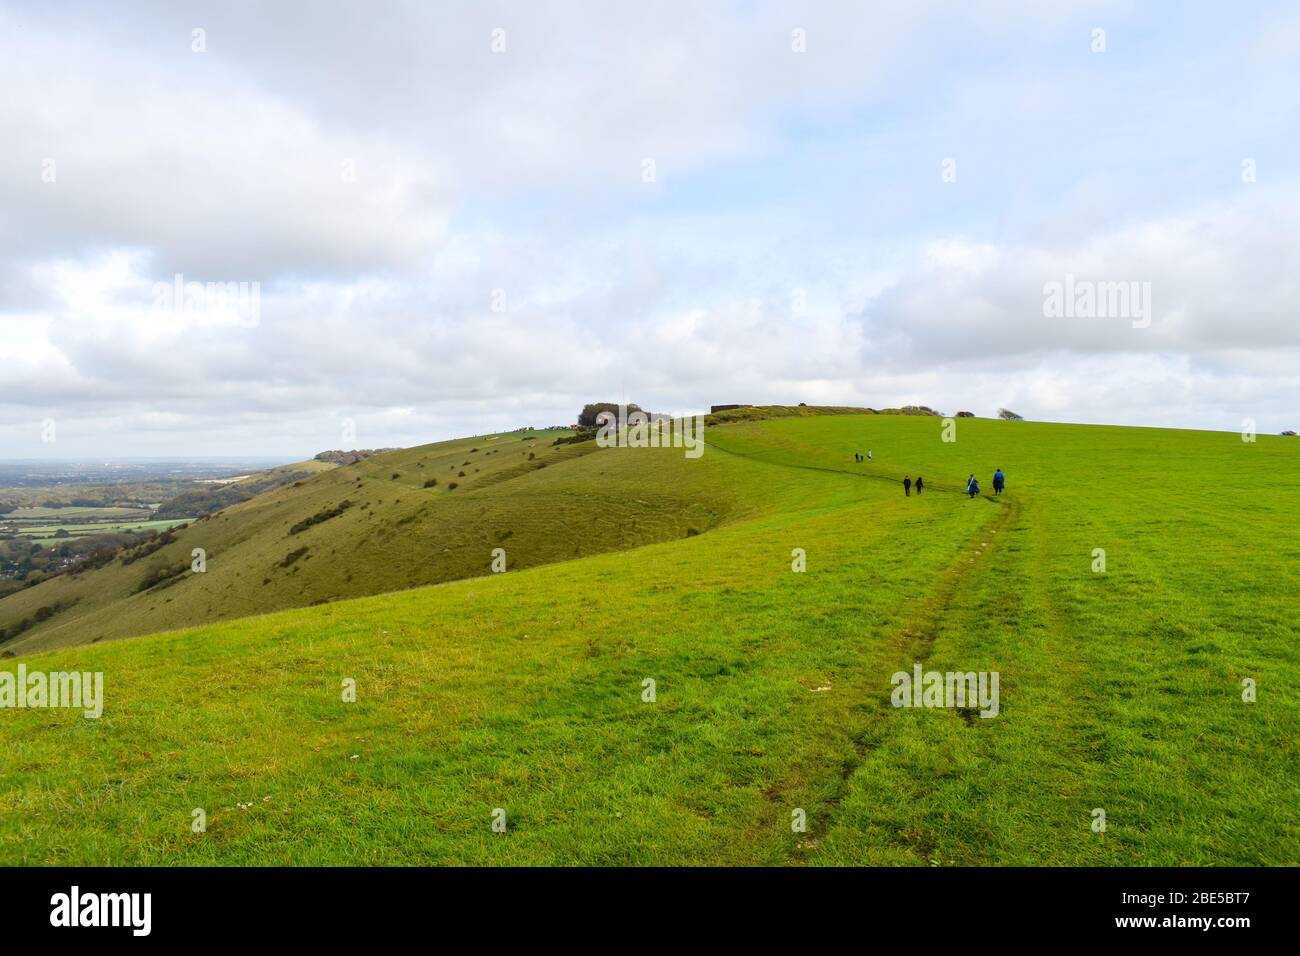 Persone a piedi il percorso escursionistico South Downs Way a Devils Dyke in Sussex, Regno Unito. Il paesaggio è verde e ondulata colline in una giornata nuvolosa. Foto Stock